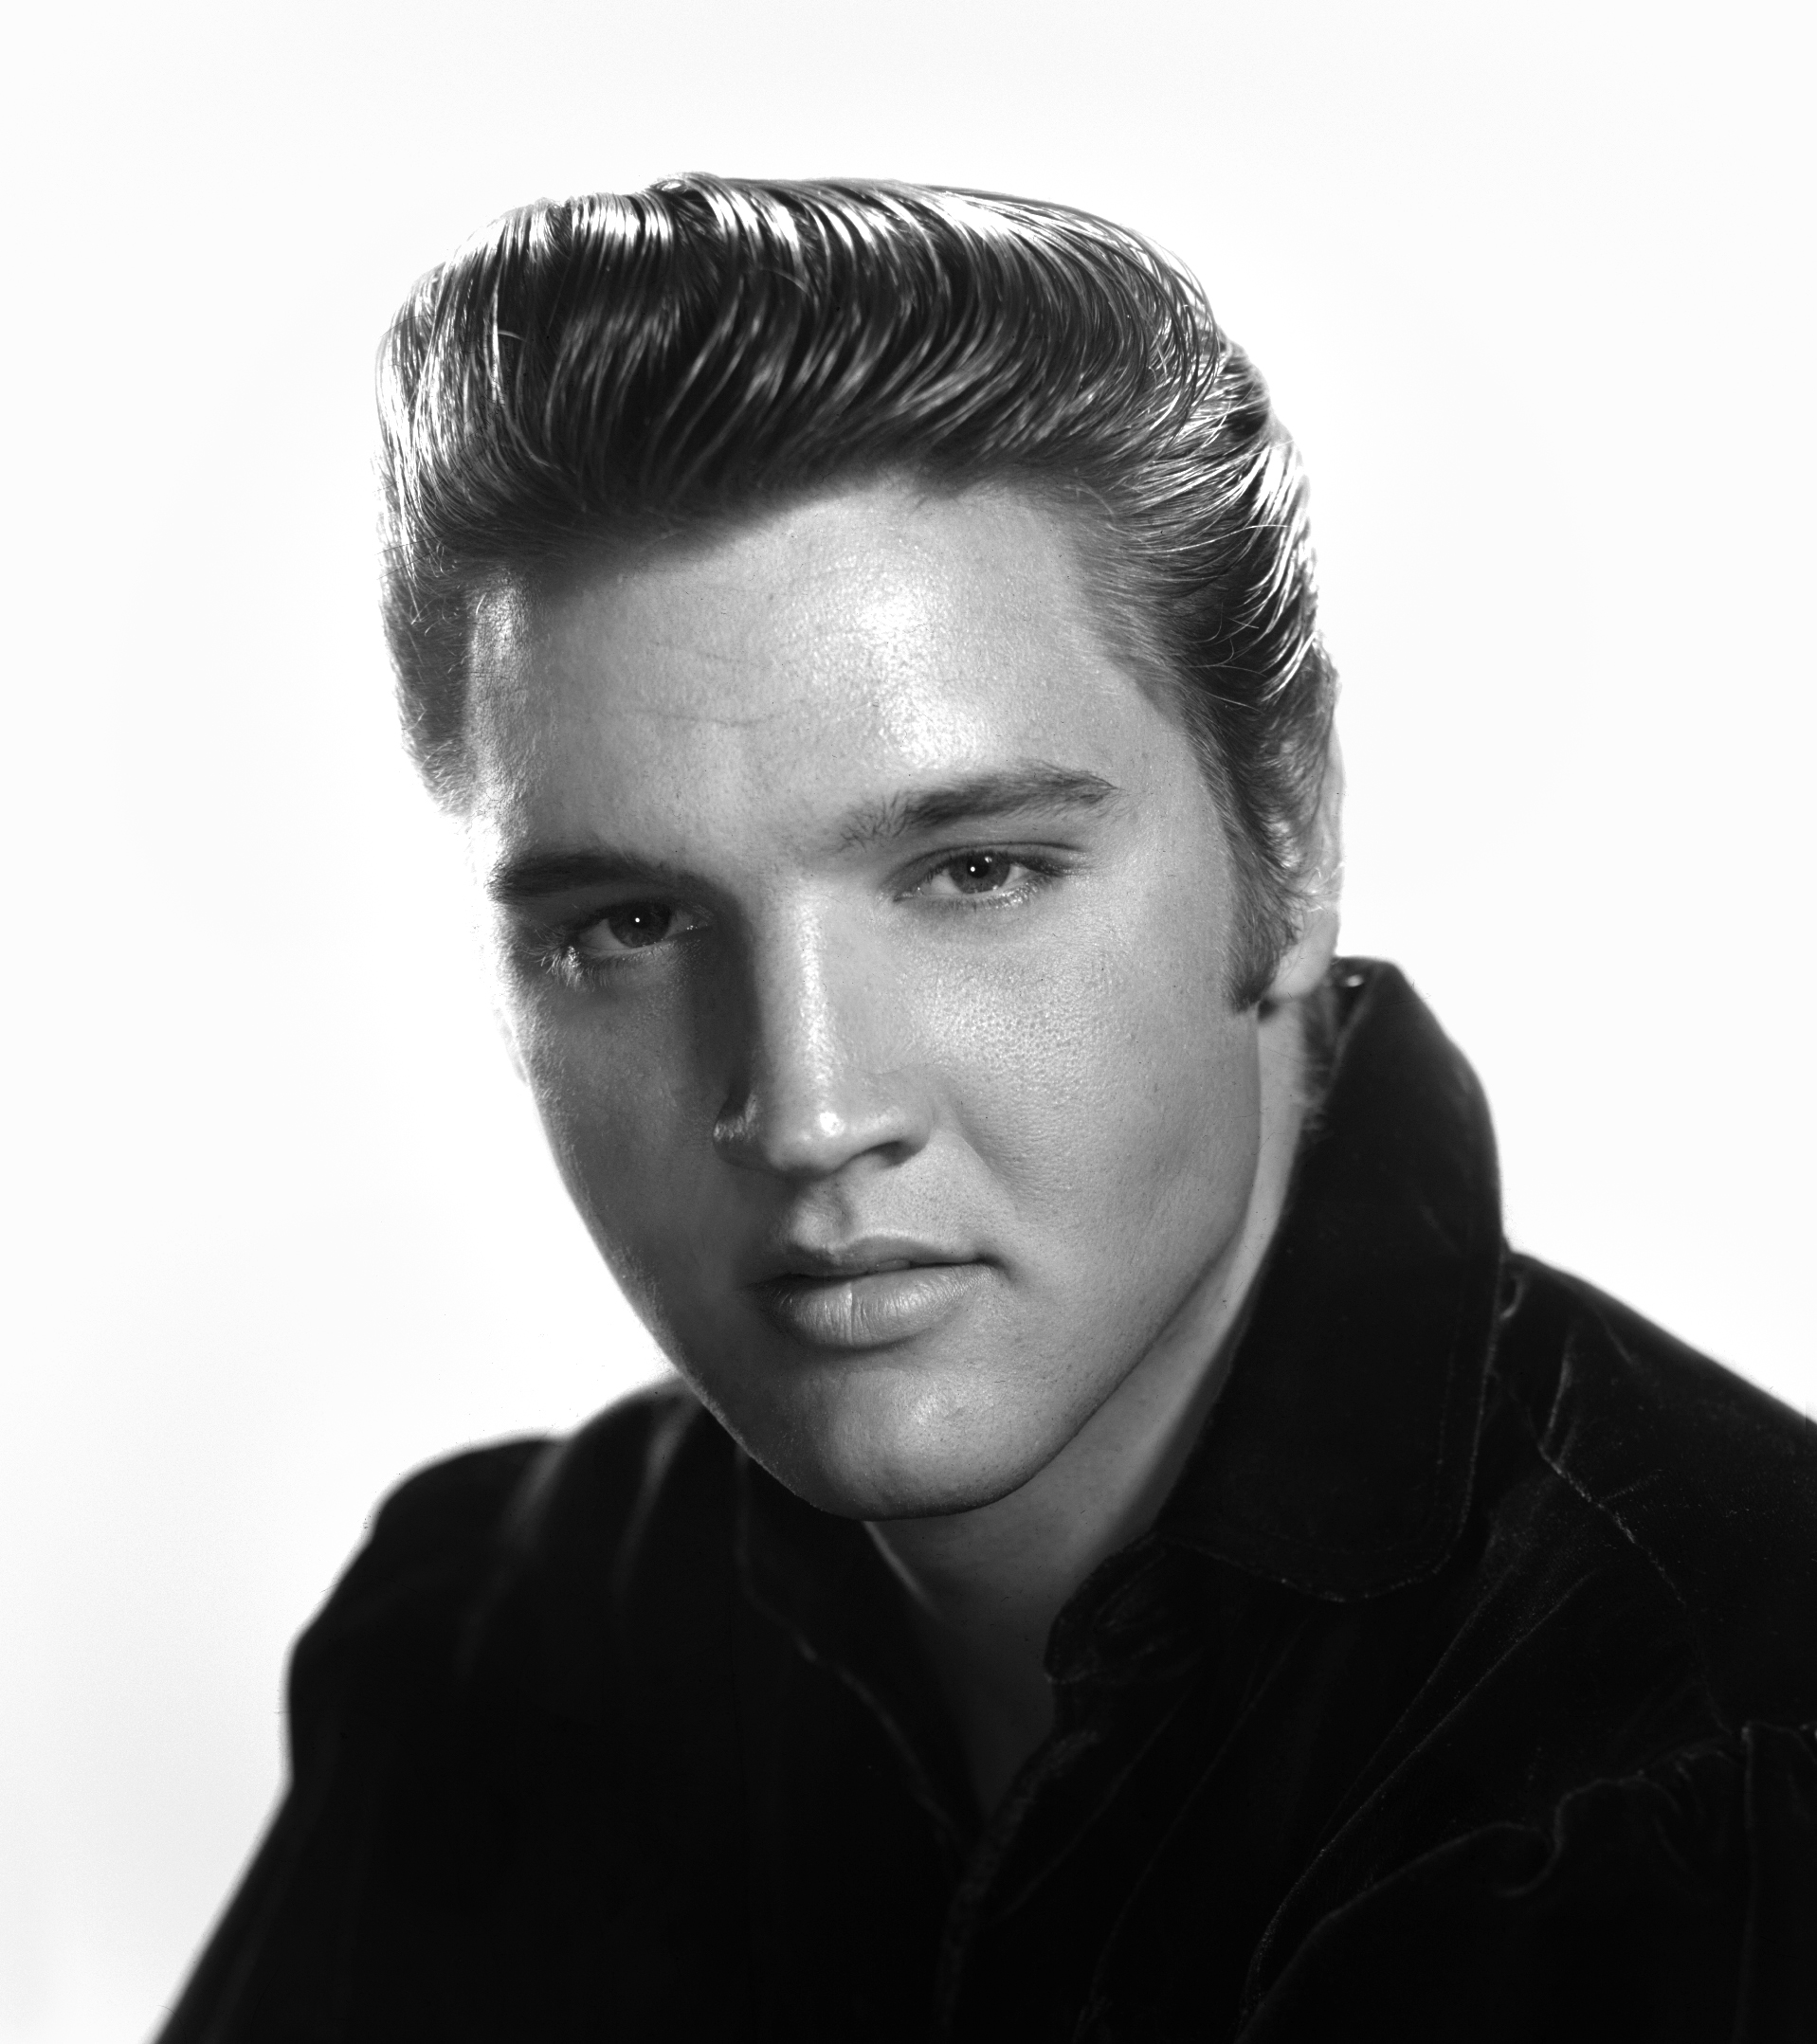 Elvis Presley Backgrounds, Compatible - PC, Mobile, Gadgets| 1917x2157 px